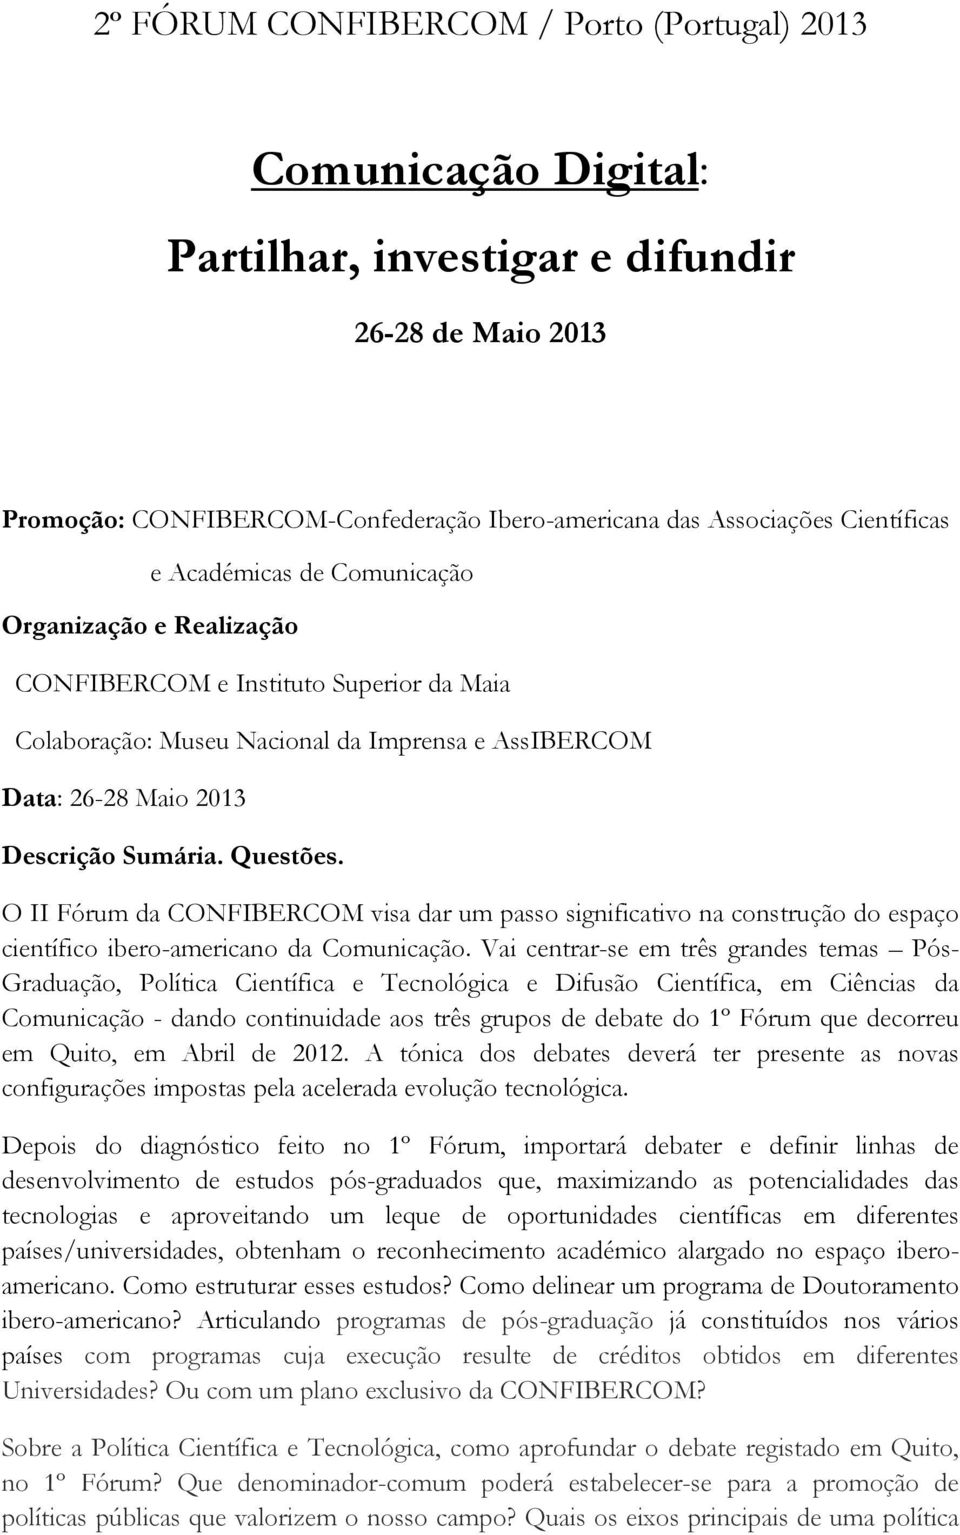 O II Fórum da CONFIBERCOM visa dar um passo significativo na construção do espaço científico ibero-americano da Comunicação.